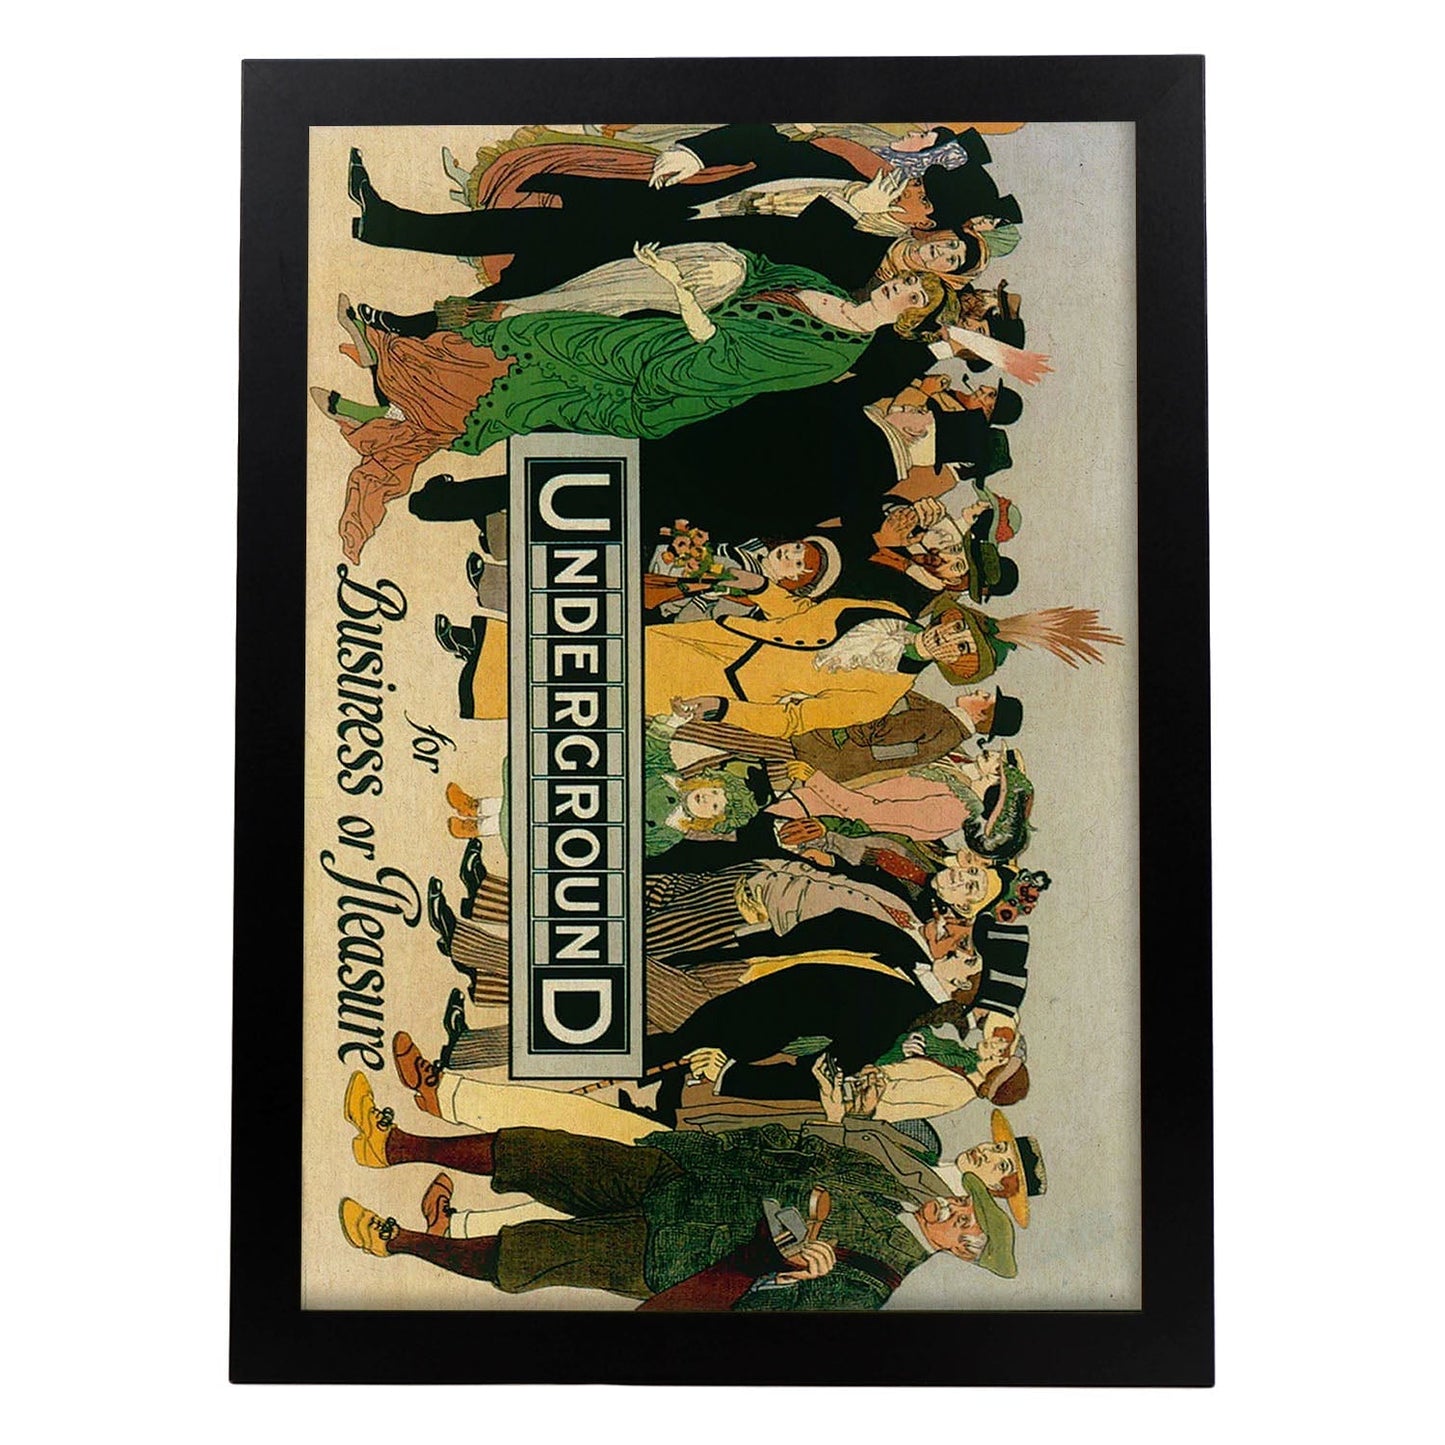 Poster vintage. Cartel vintage de Europa. Metro de Londres, 1913.-Artwork-Nacnic-A4-Marco Negro-Nacnic Estudio SL